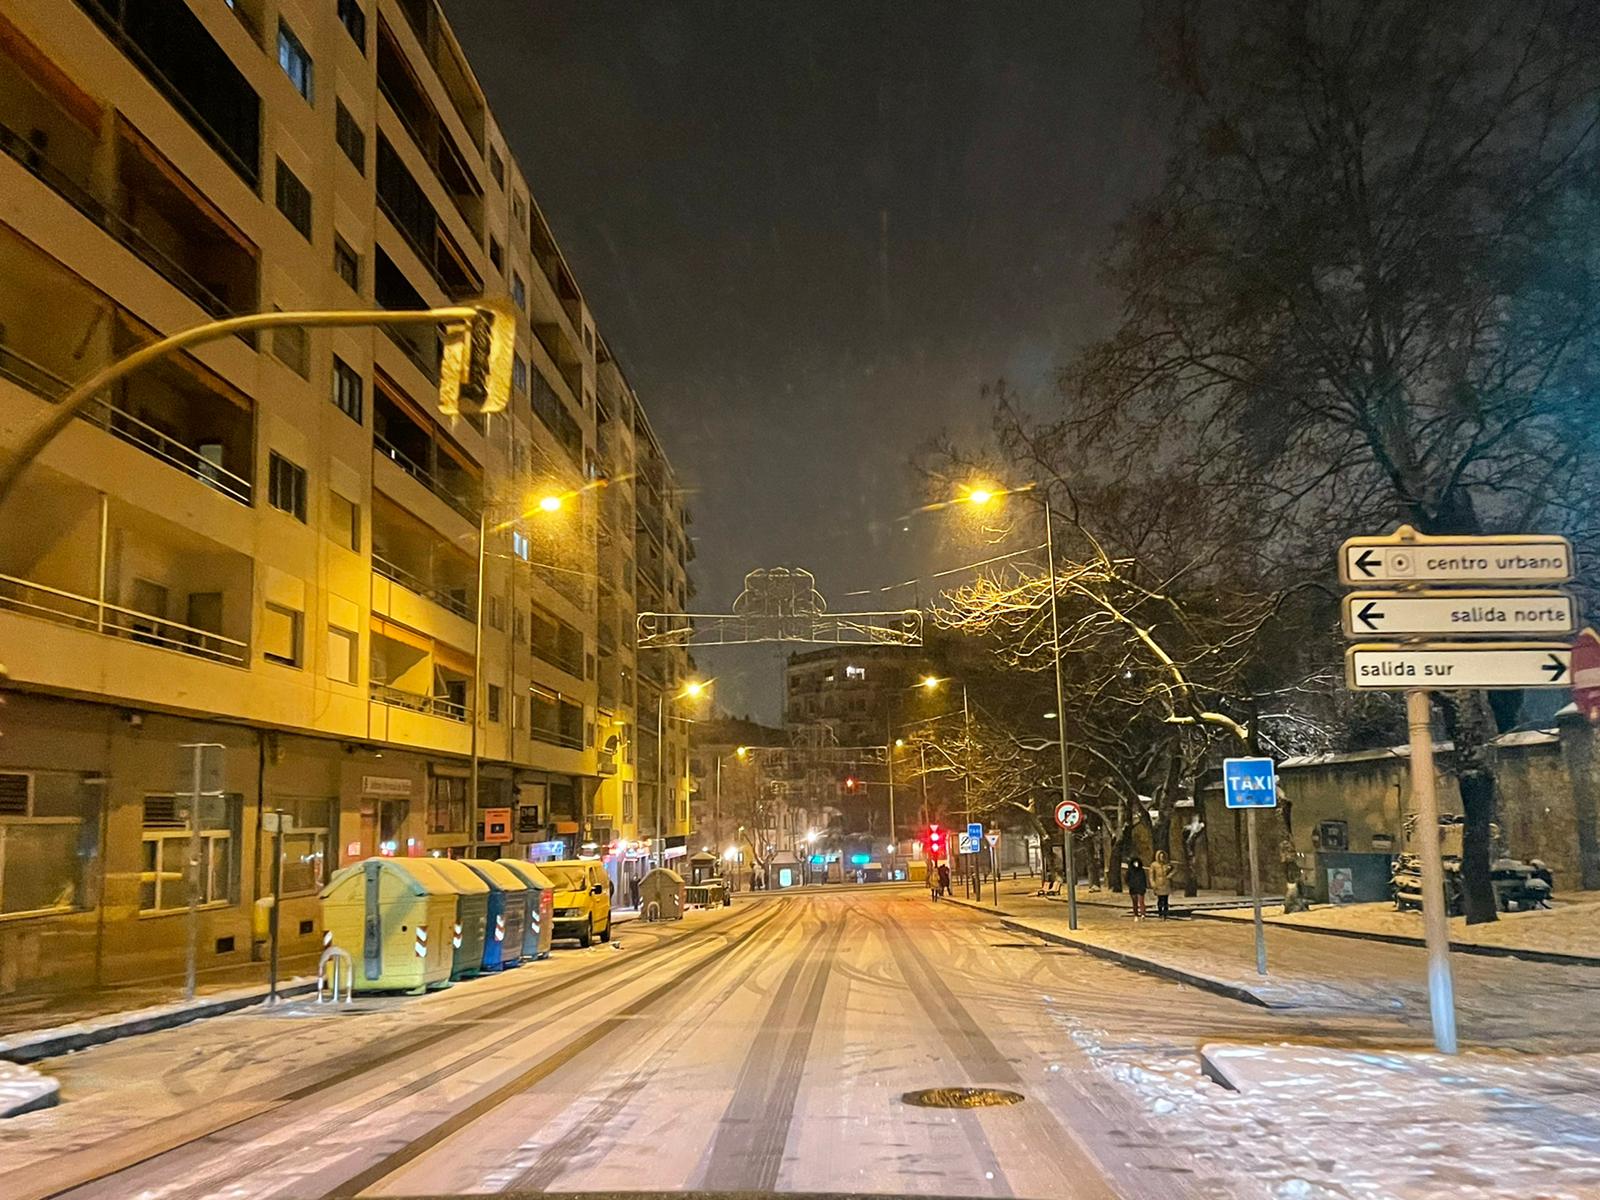 Nieve por las calles de Salamanca sábado noche (23)